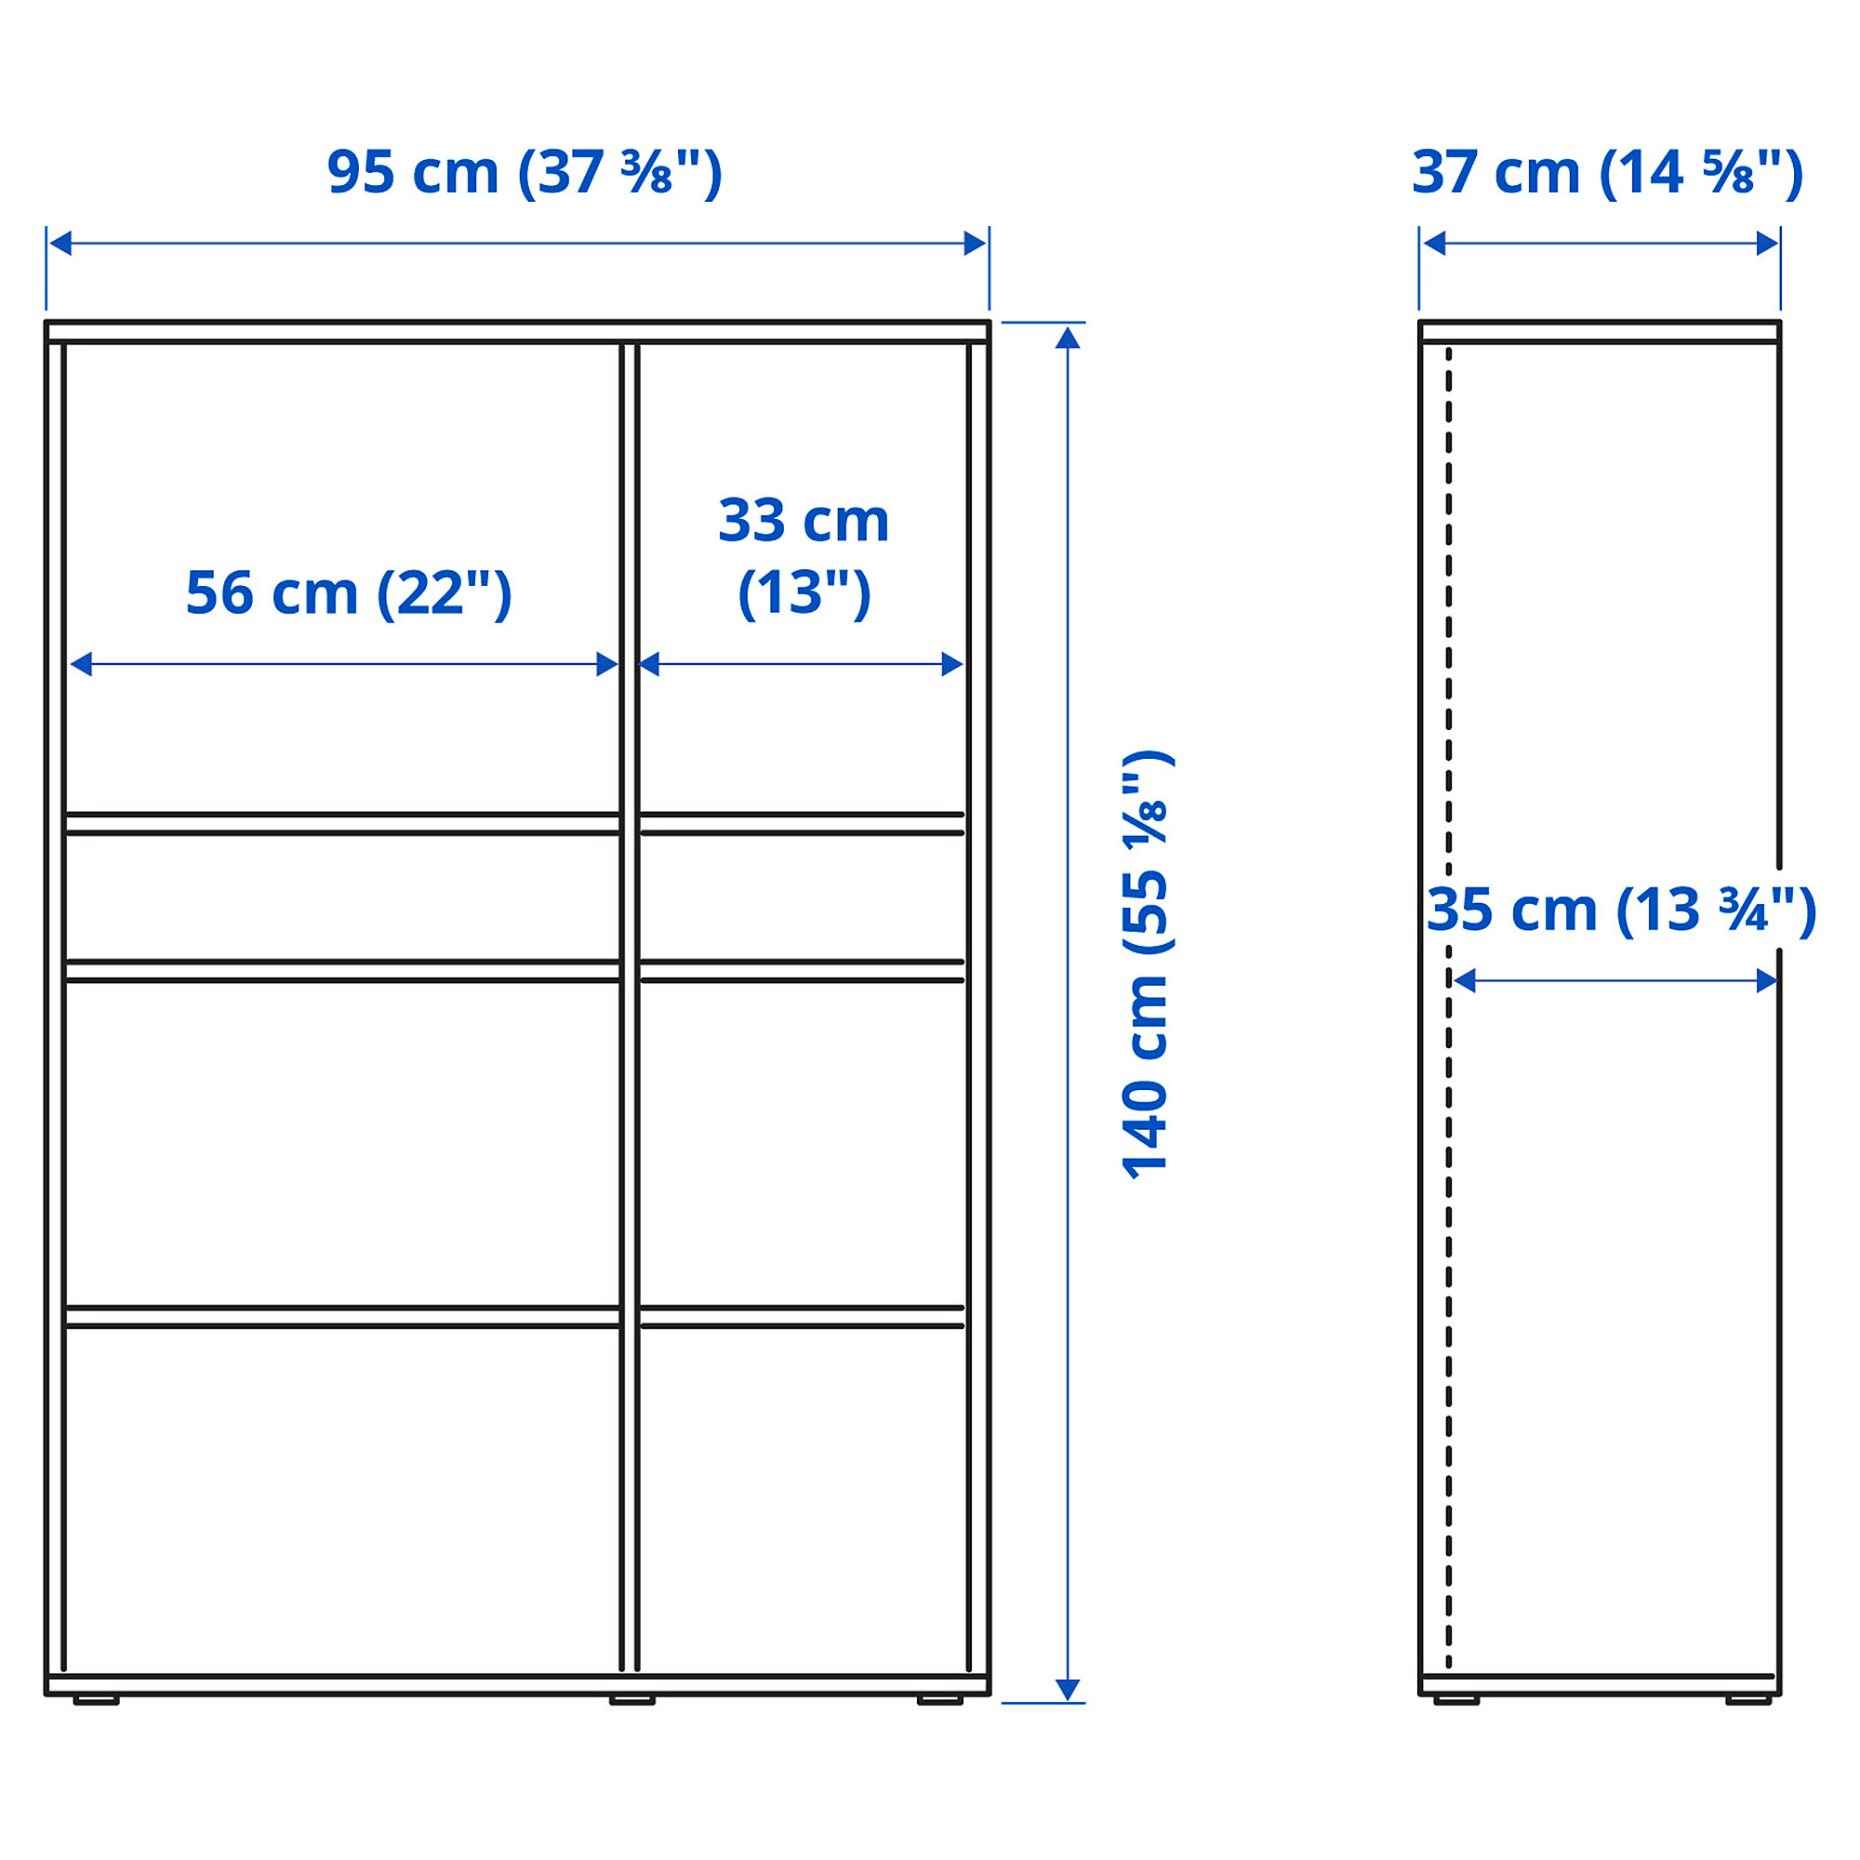 VIHALS, shelving unit with 6 shelves, 95x37x140 cm, 804.832.83